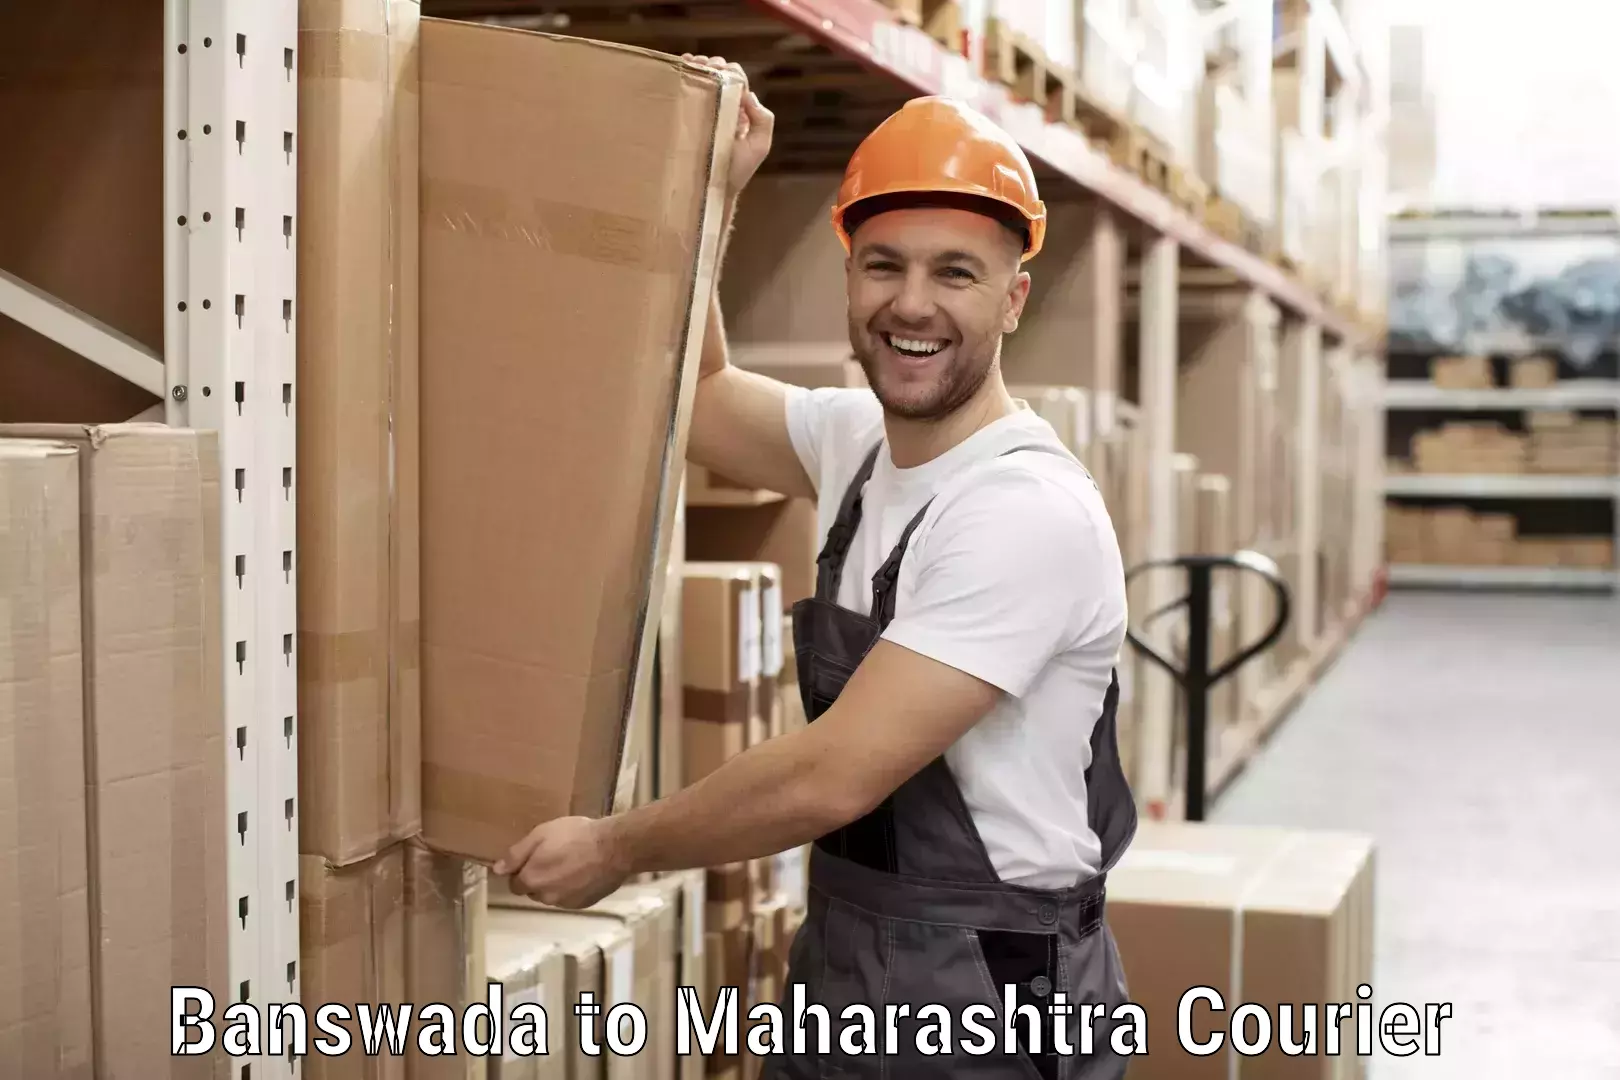 Doorstep delivery service Banswada to Maharashtra